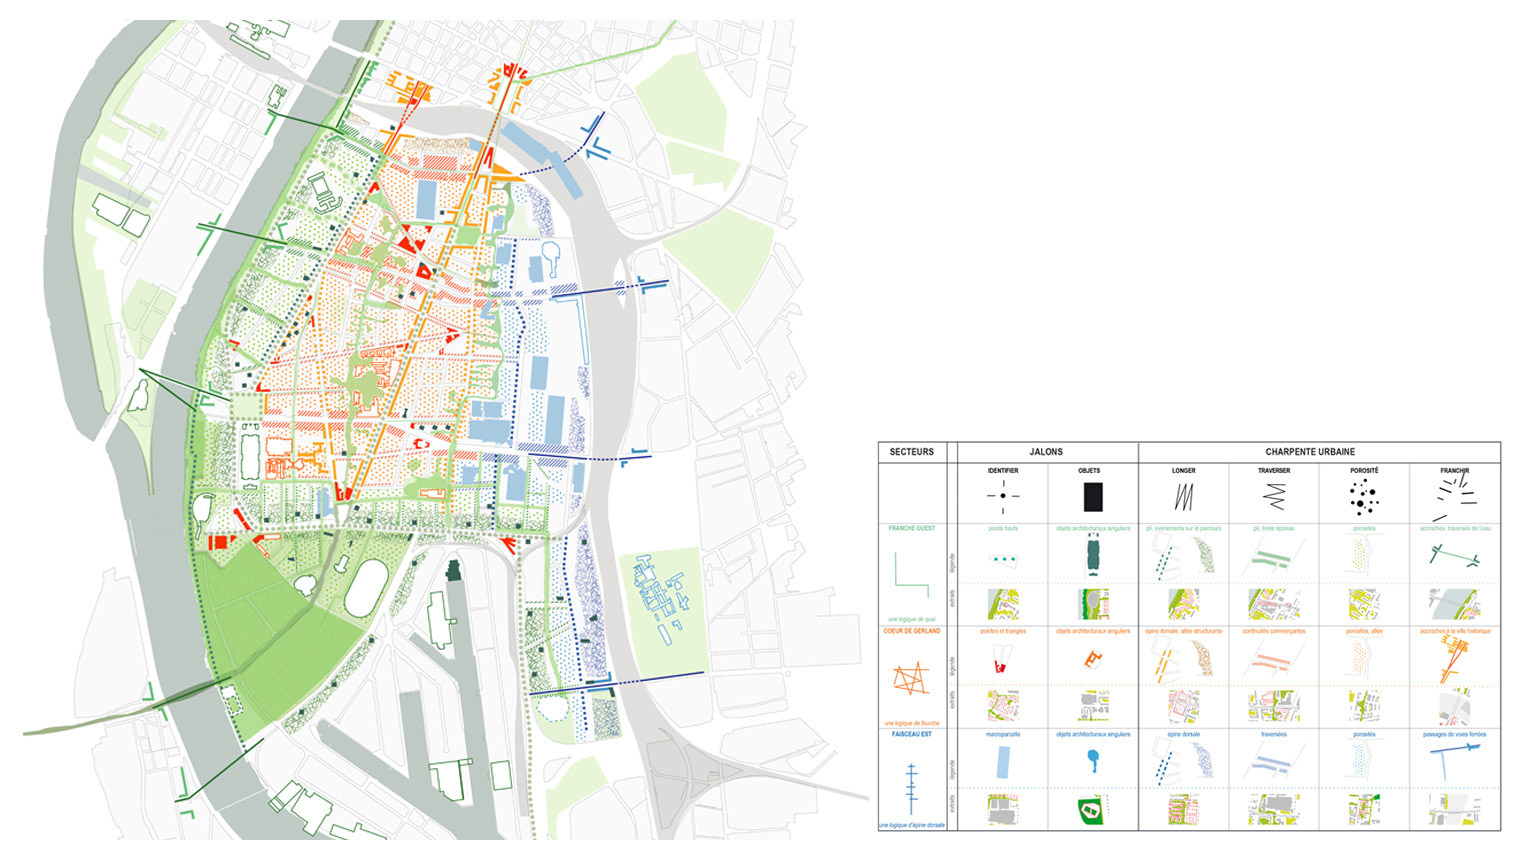 Mission d’études, d’expertise et de conseil pour la définition et la mise en œuvre du projet urbain et durable de Gerland